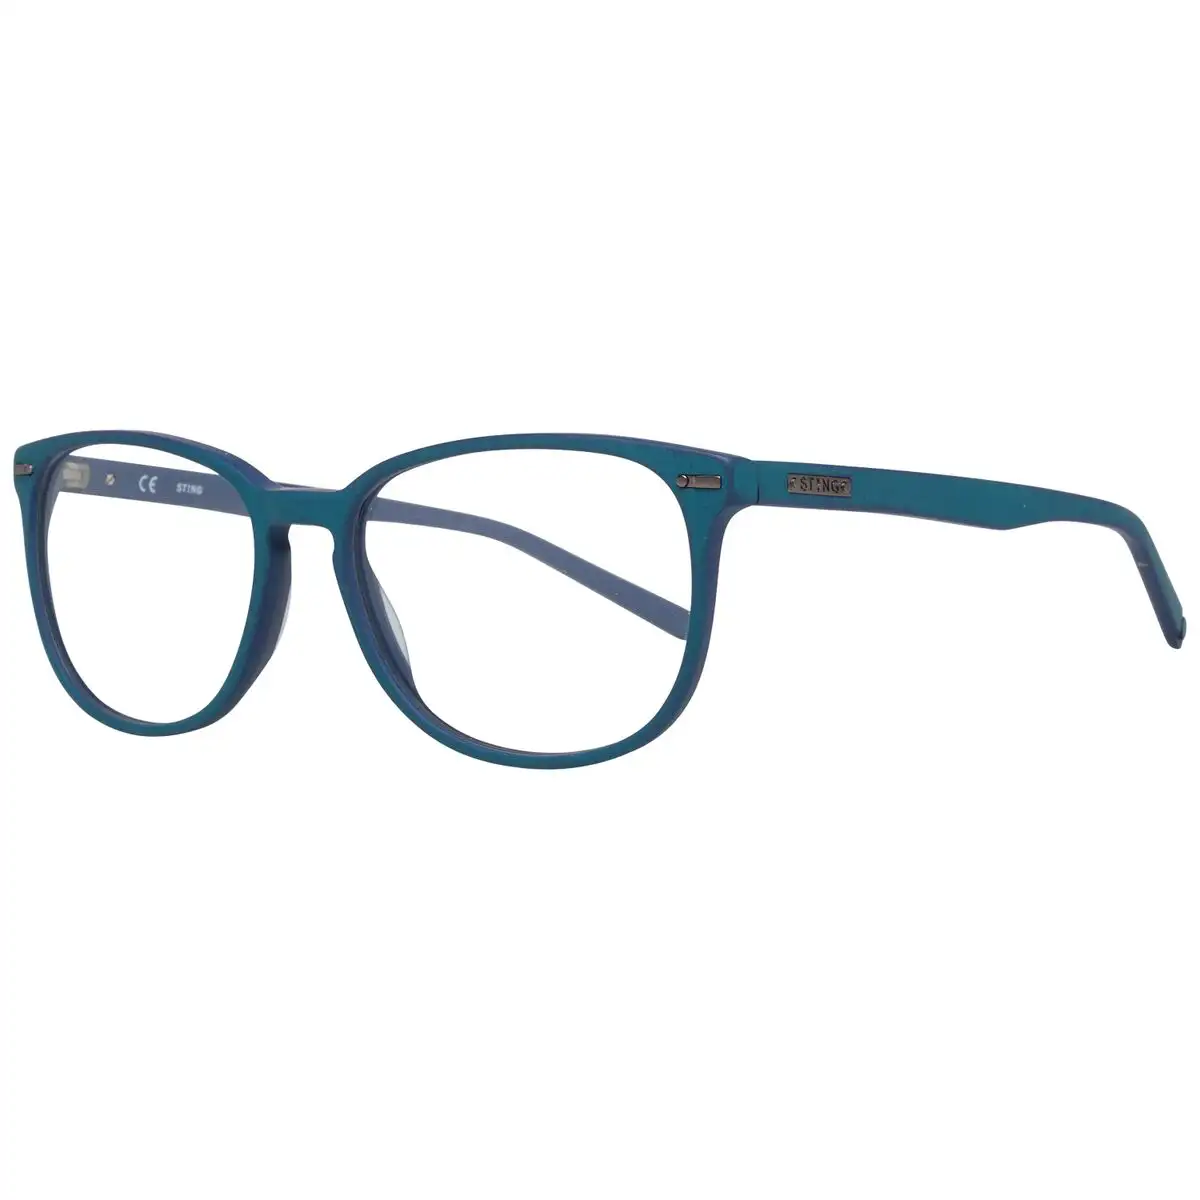 Monture de lunettes unisexe sting vst040 530c03_6543. DIAYTAR SENEGAL - Là où Chaque Produit est une Trouvaille Unique. Découvrez notre boutique en ligne et trouvez des articles qui vous distinguent par leur originalité.